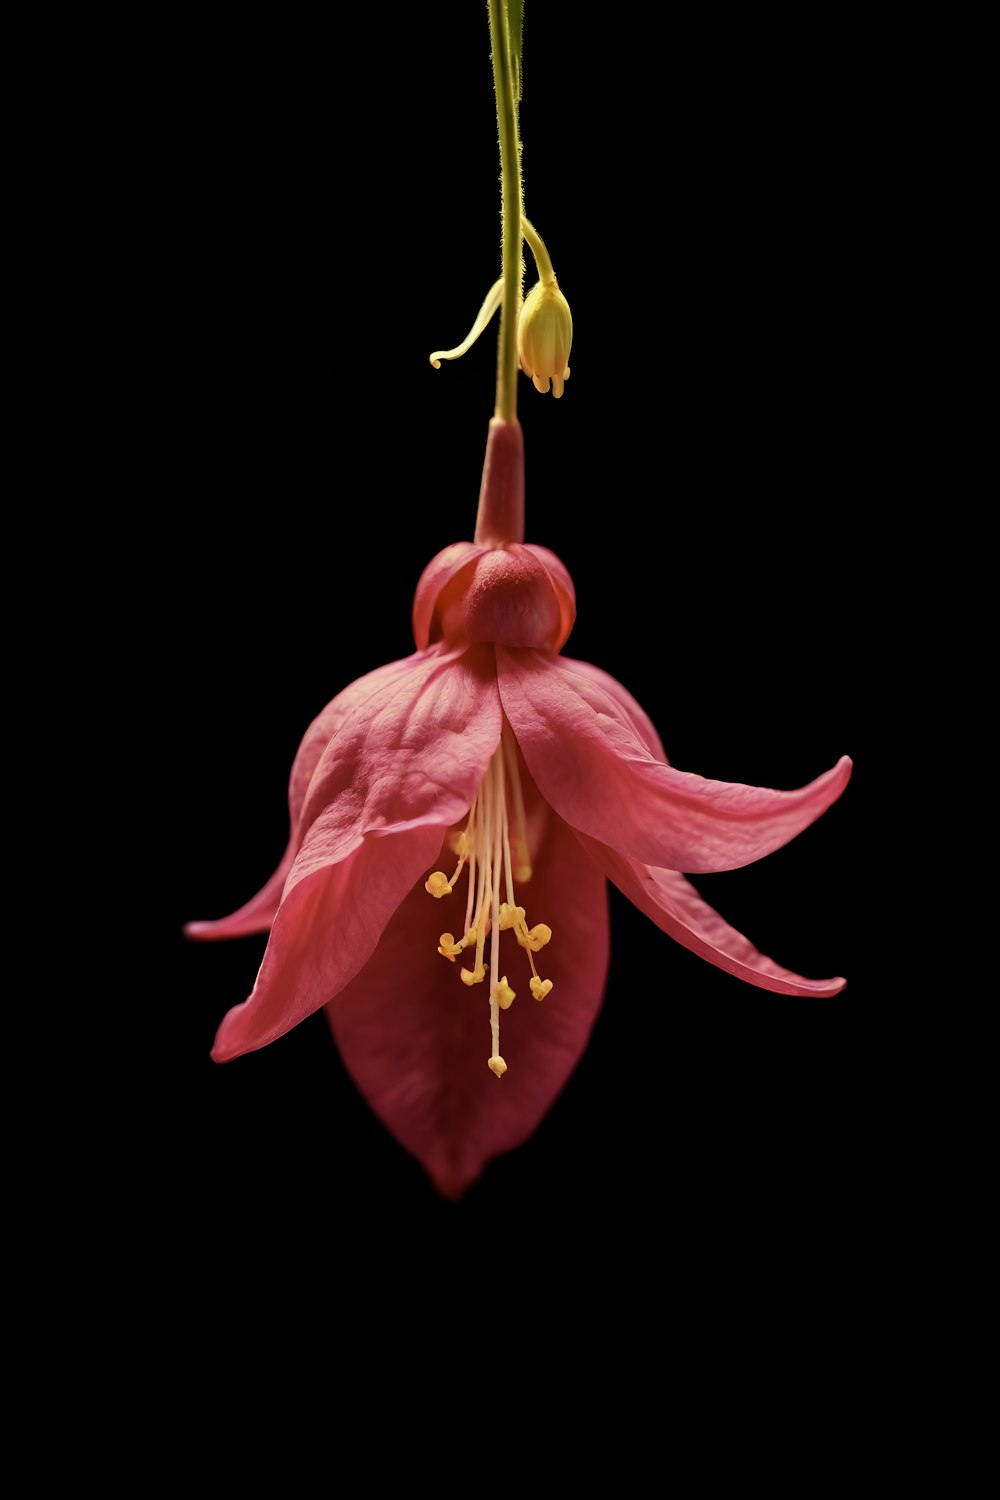 un fiore rosa con stami gialli appeso a uno stelo